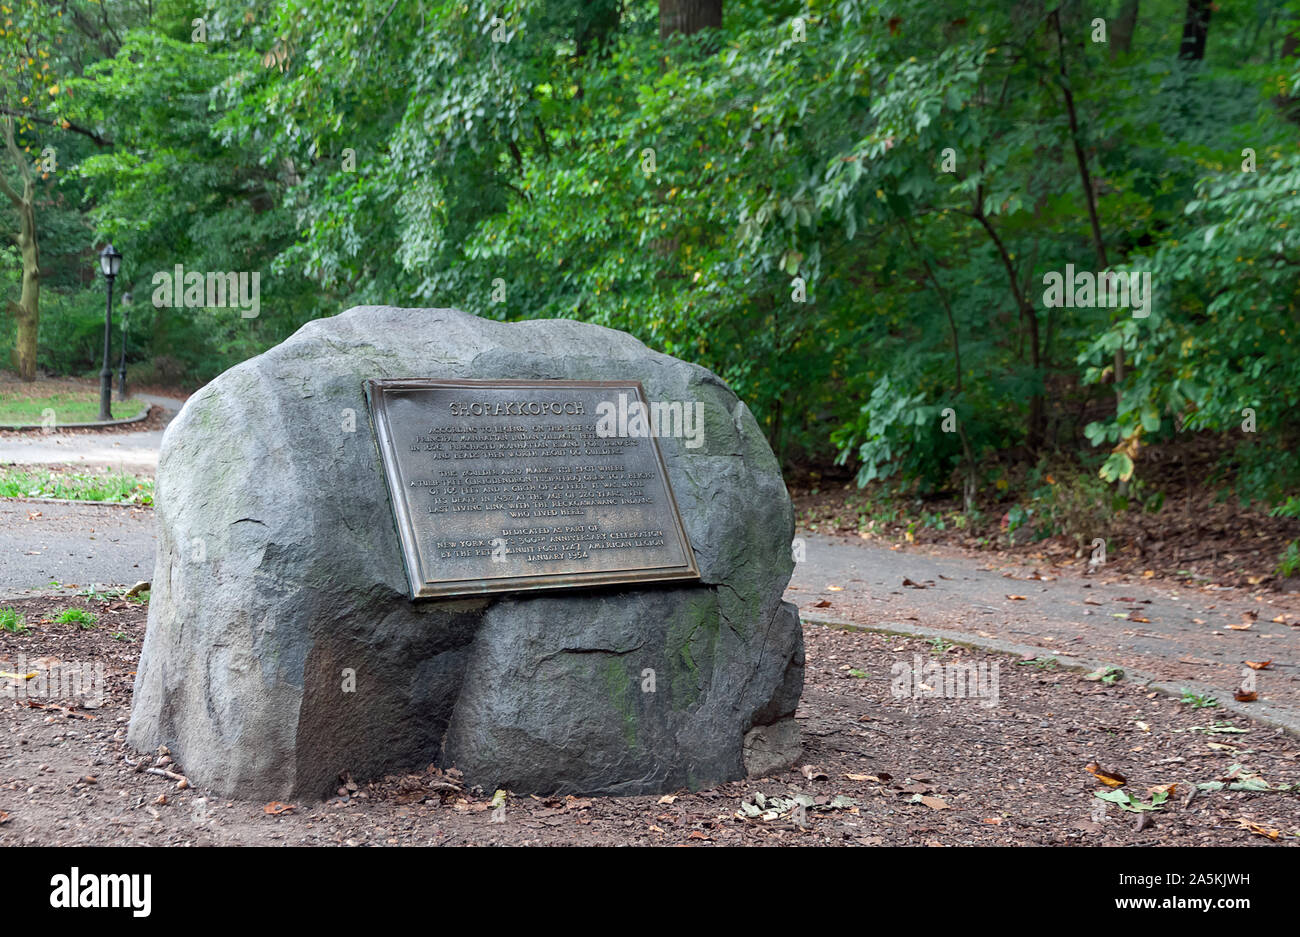 Shorakkopoch boulder marque le site où la légende dit Peter Minuit achète l'île de Manhattan aux indiens pour les bibelots et bijoux d'une valeur de 60 florins. Banque D'Images